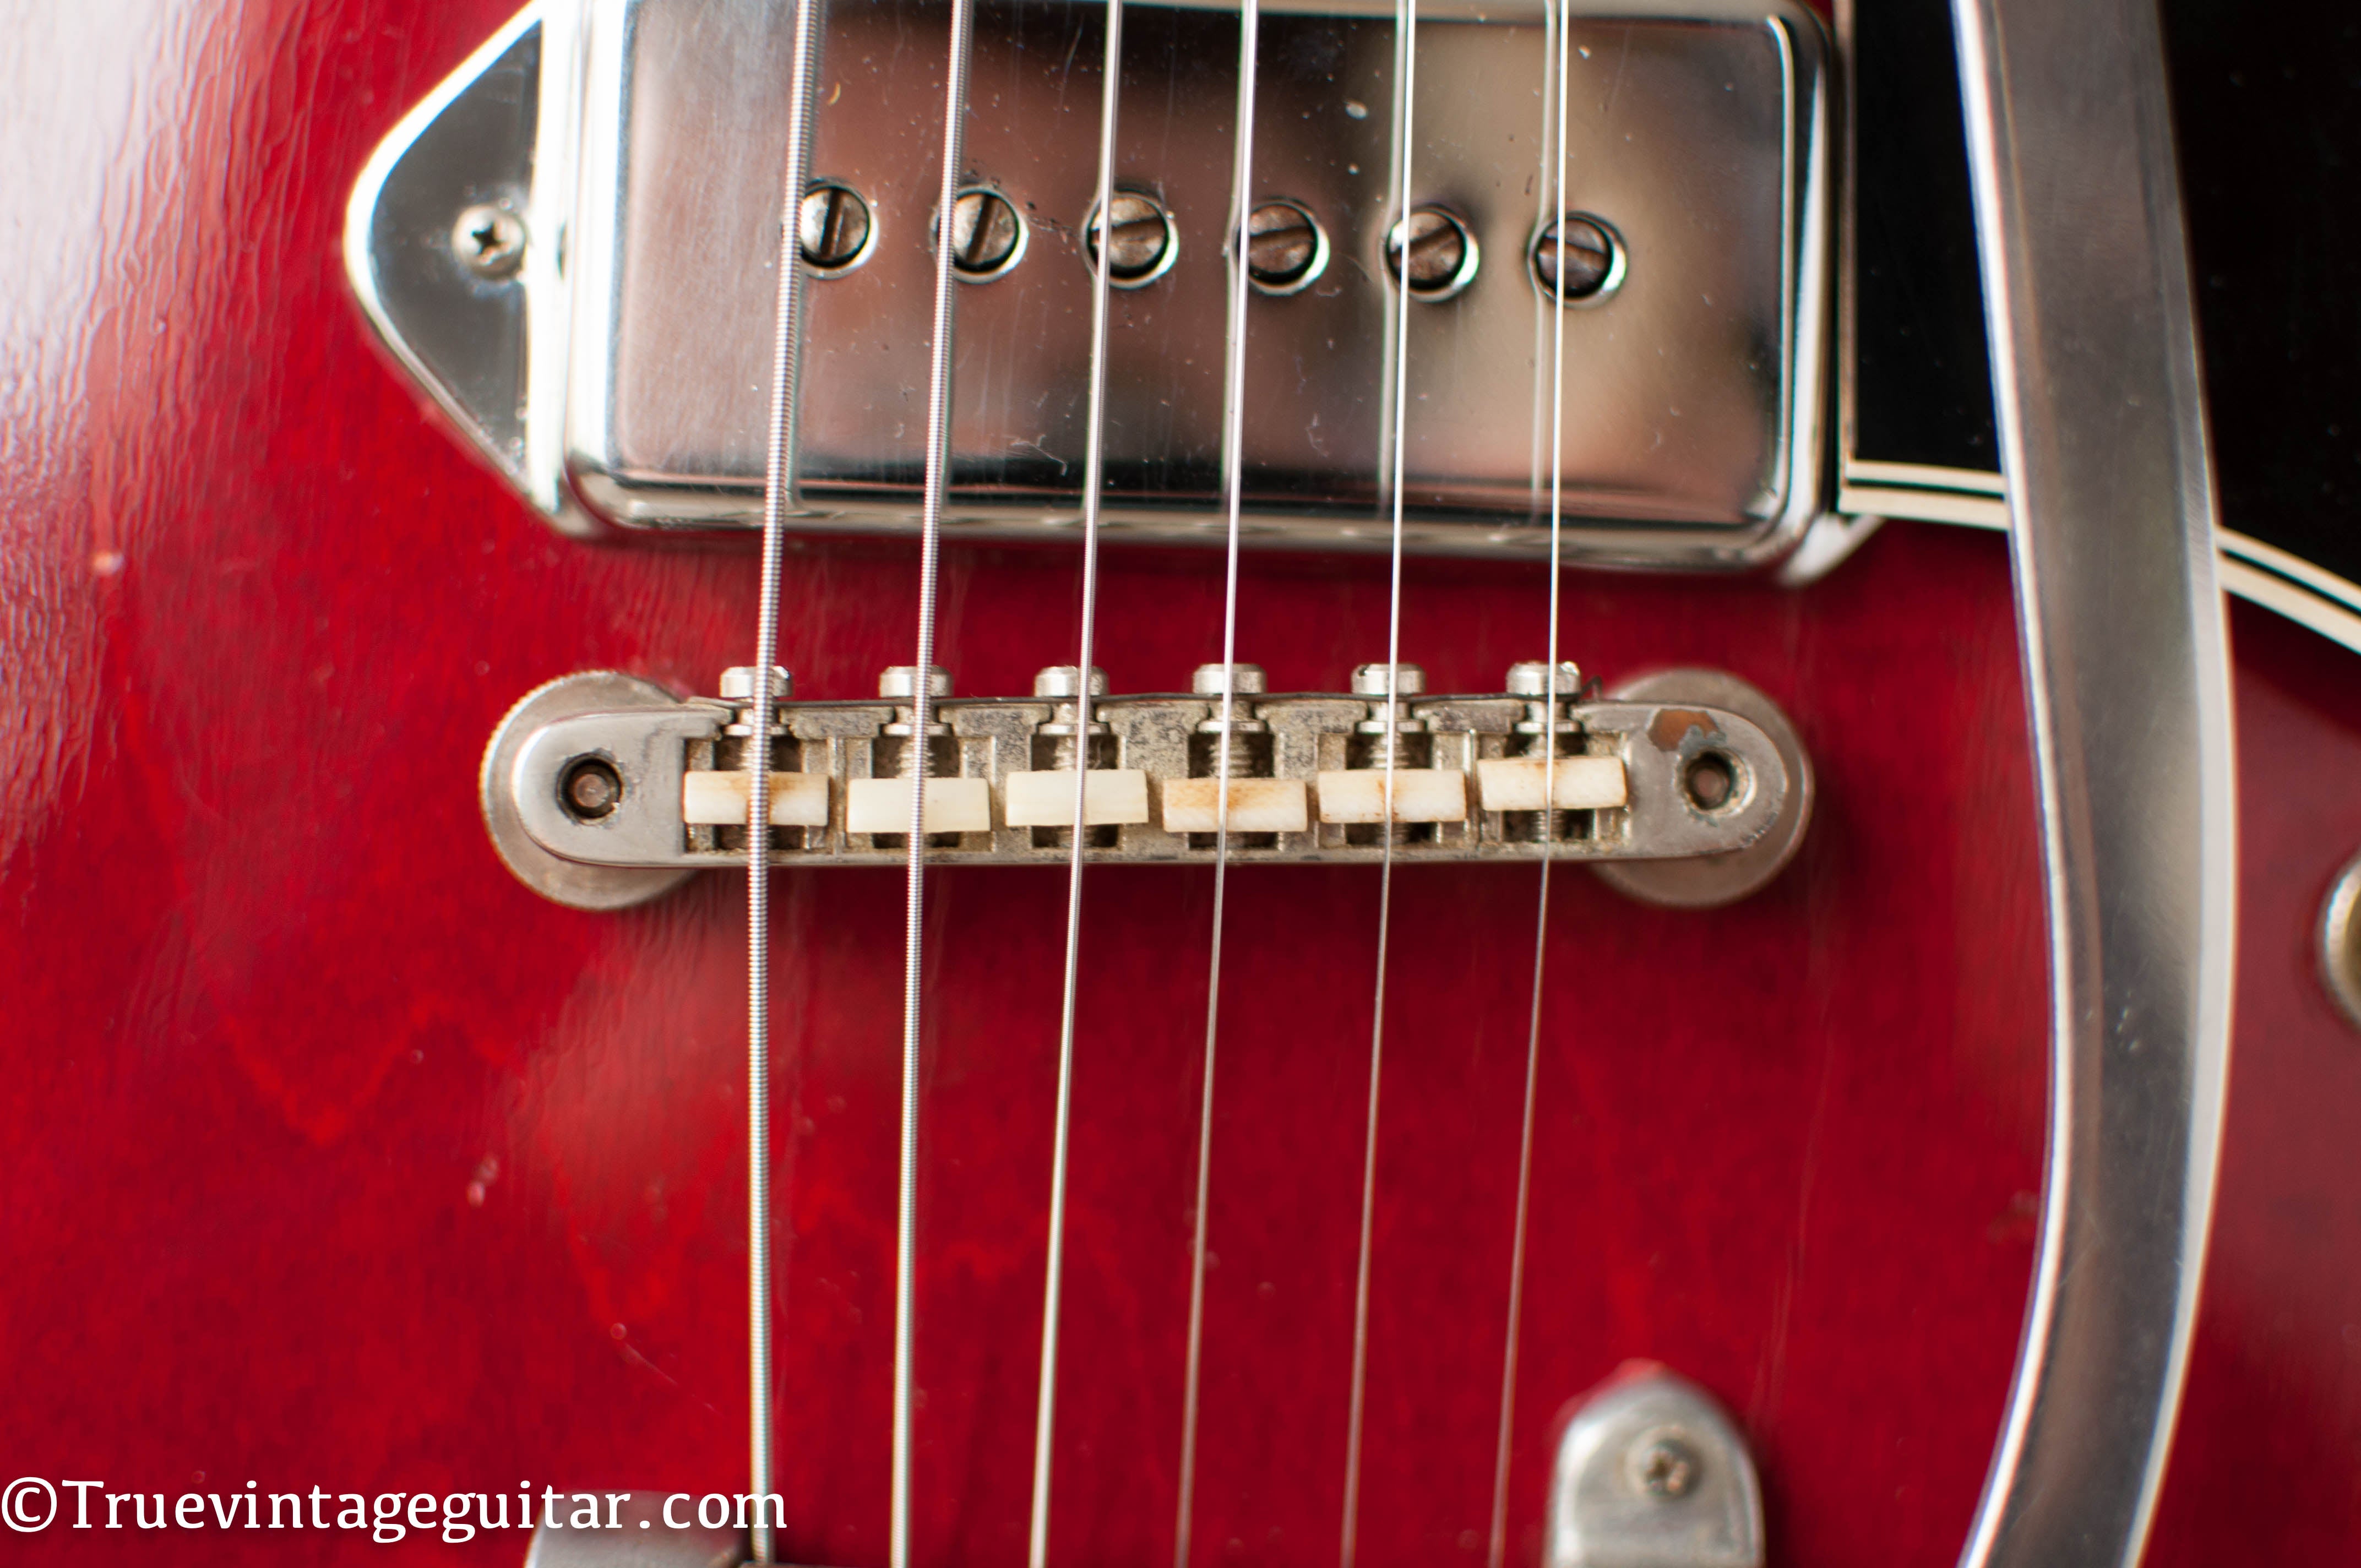 Nylon saddles, ABR-1 bridge, 1964 Gibson ES-330